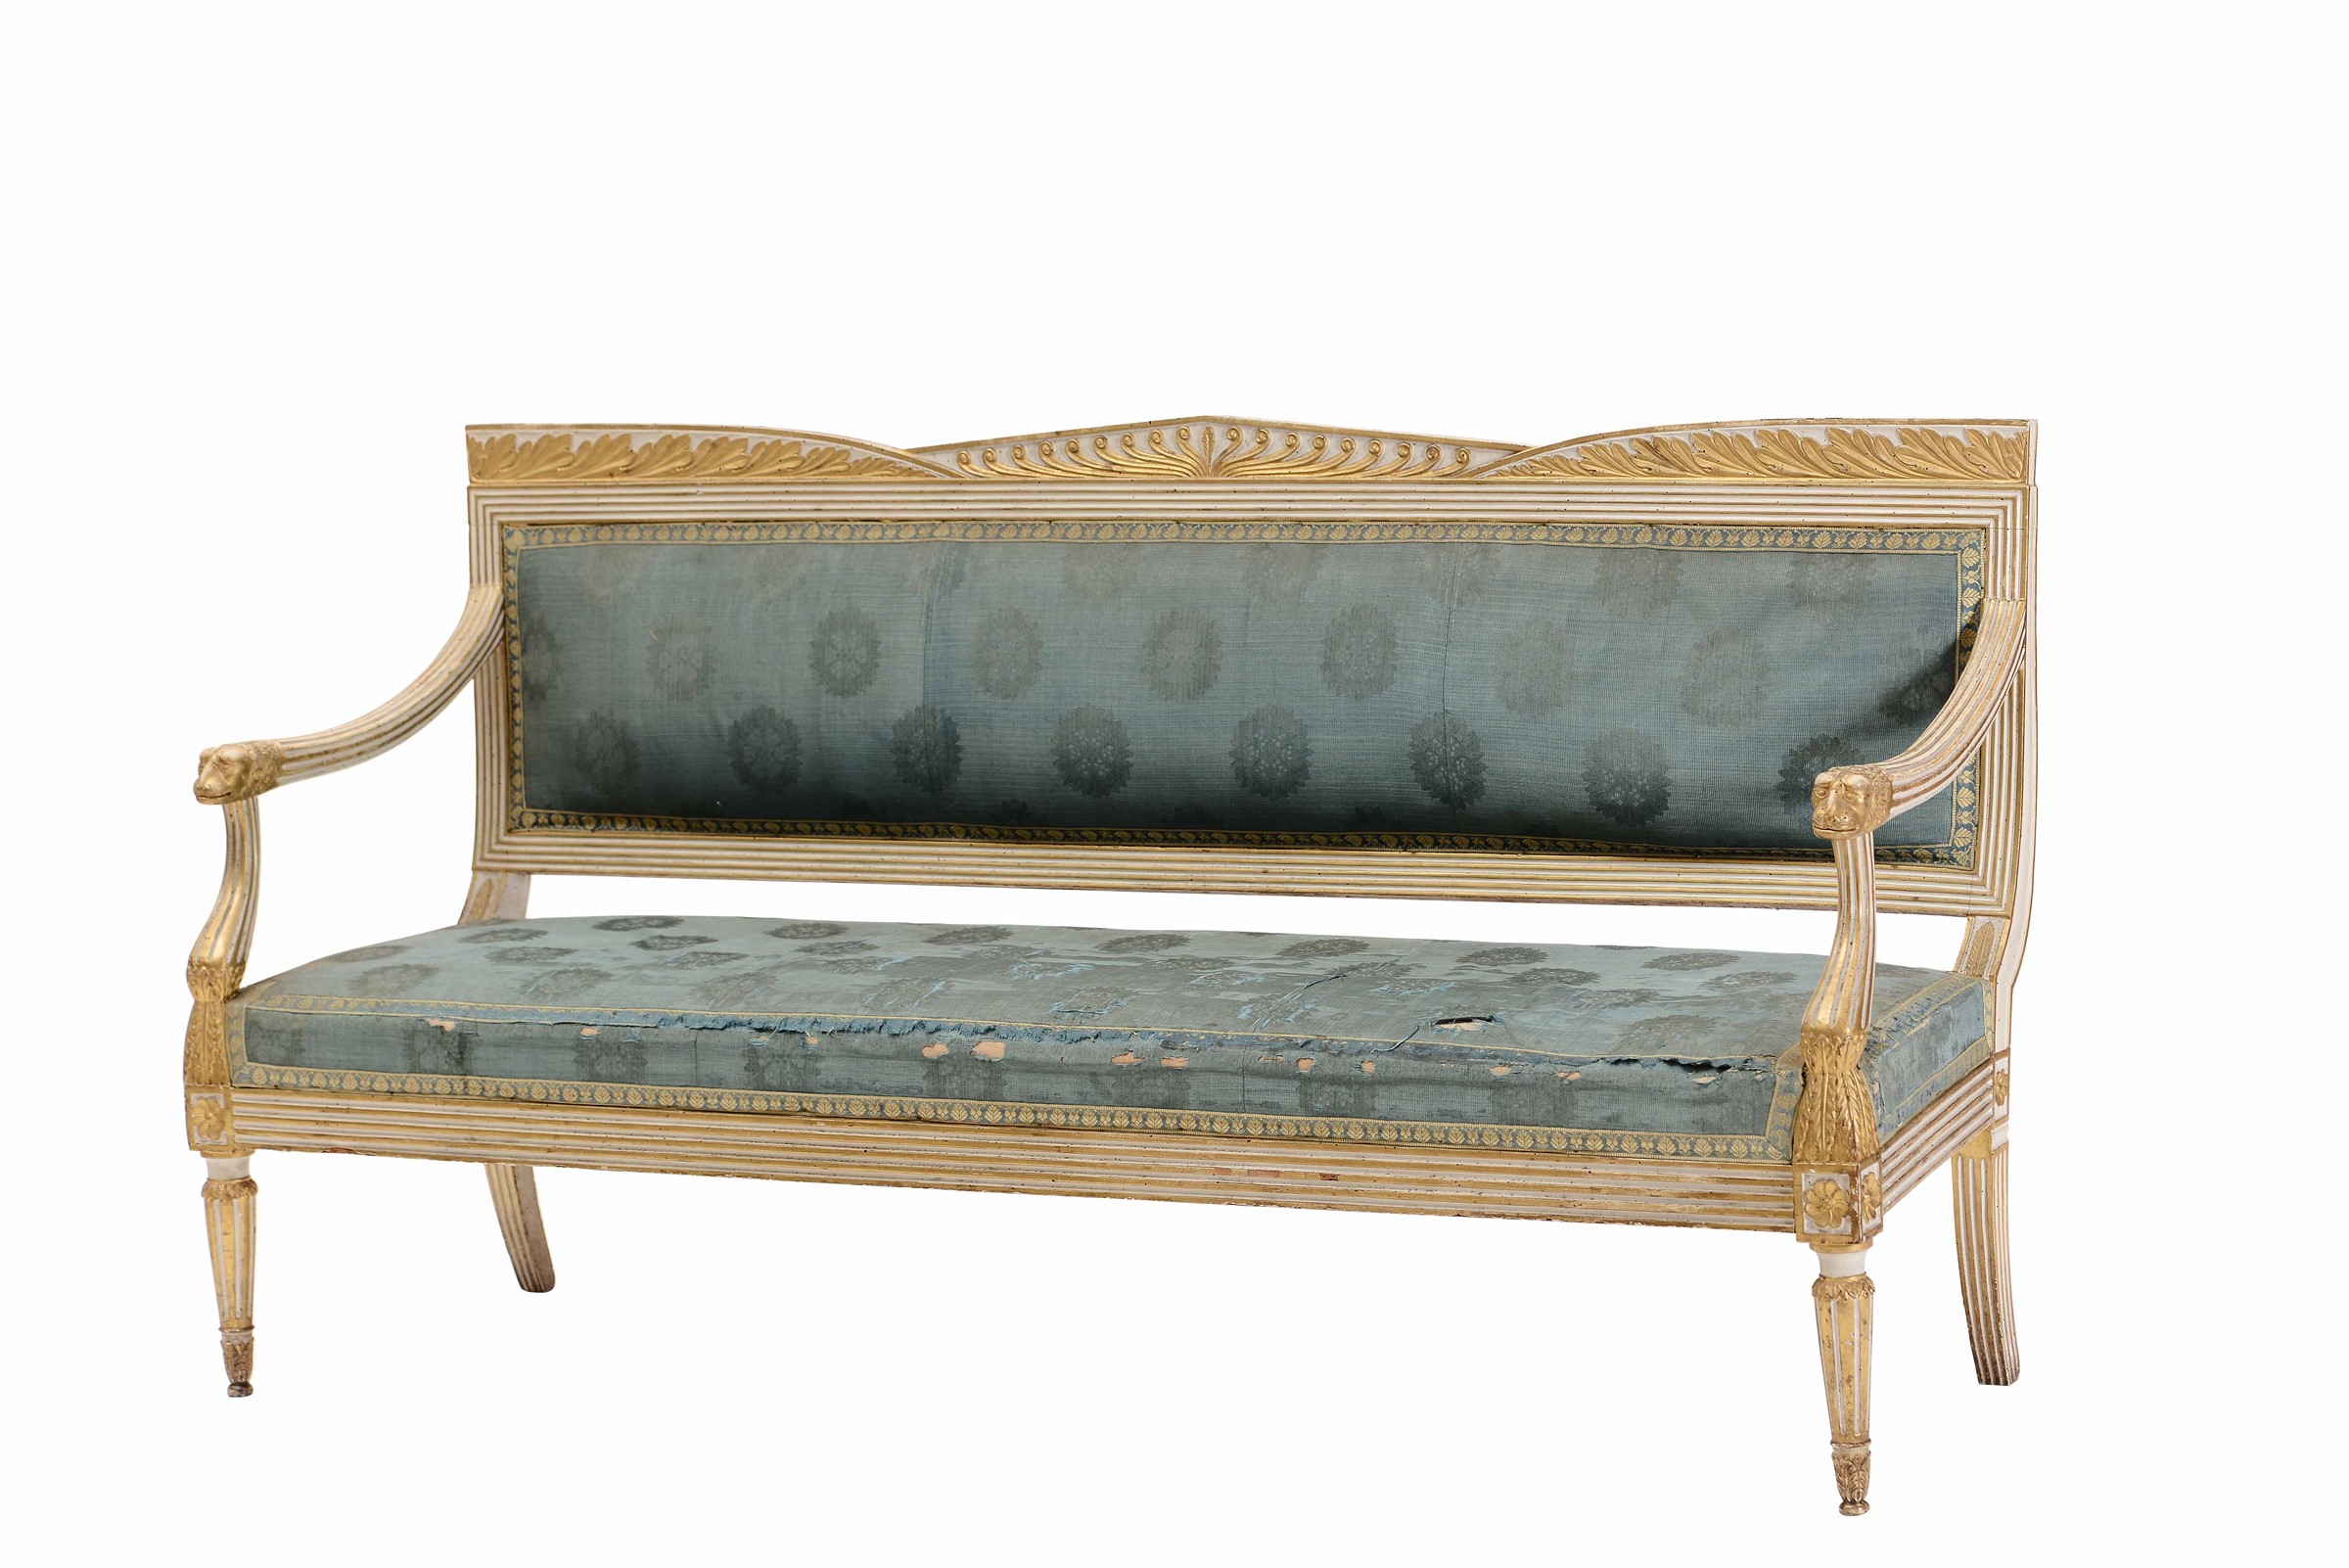 Coppia di divanetti in legno laccato e dorato. Napoli XVIII-XIX secolo, - braccioli [...] - Image 2 of 2